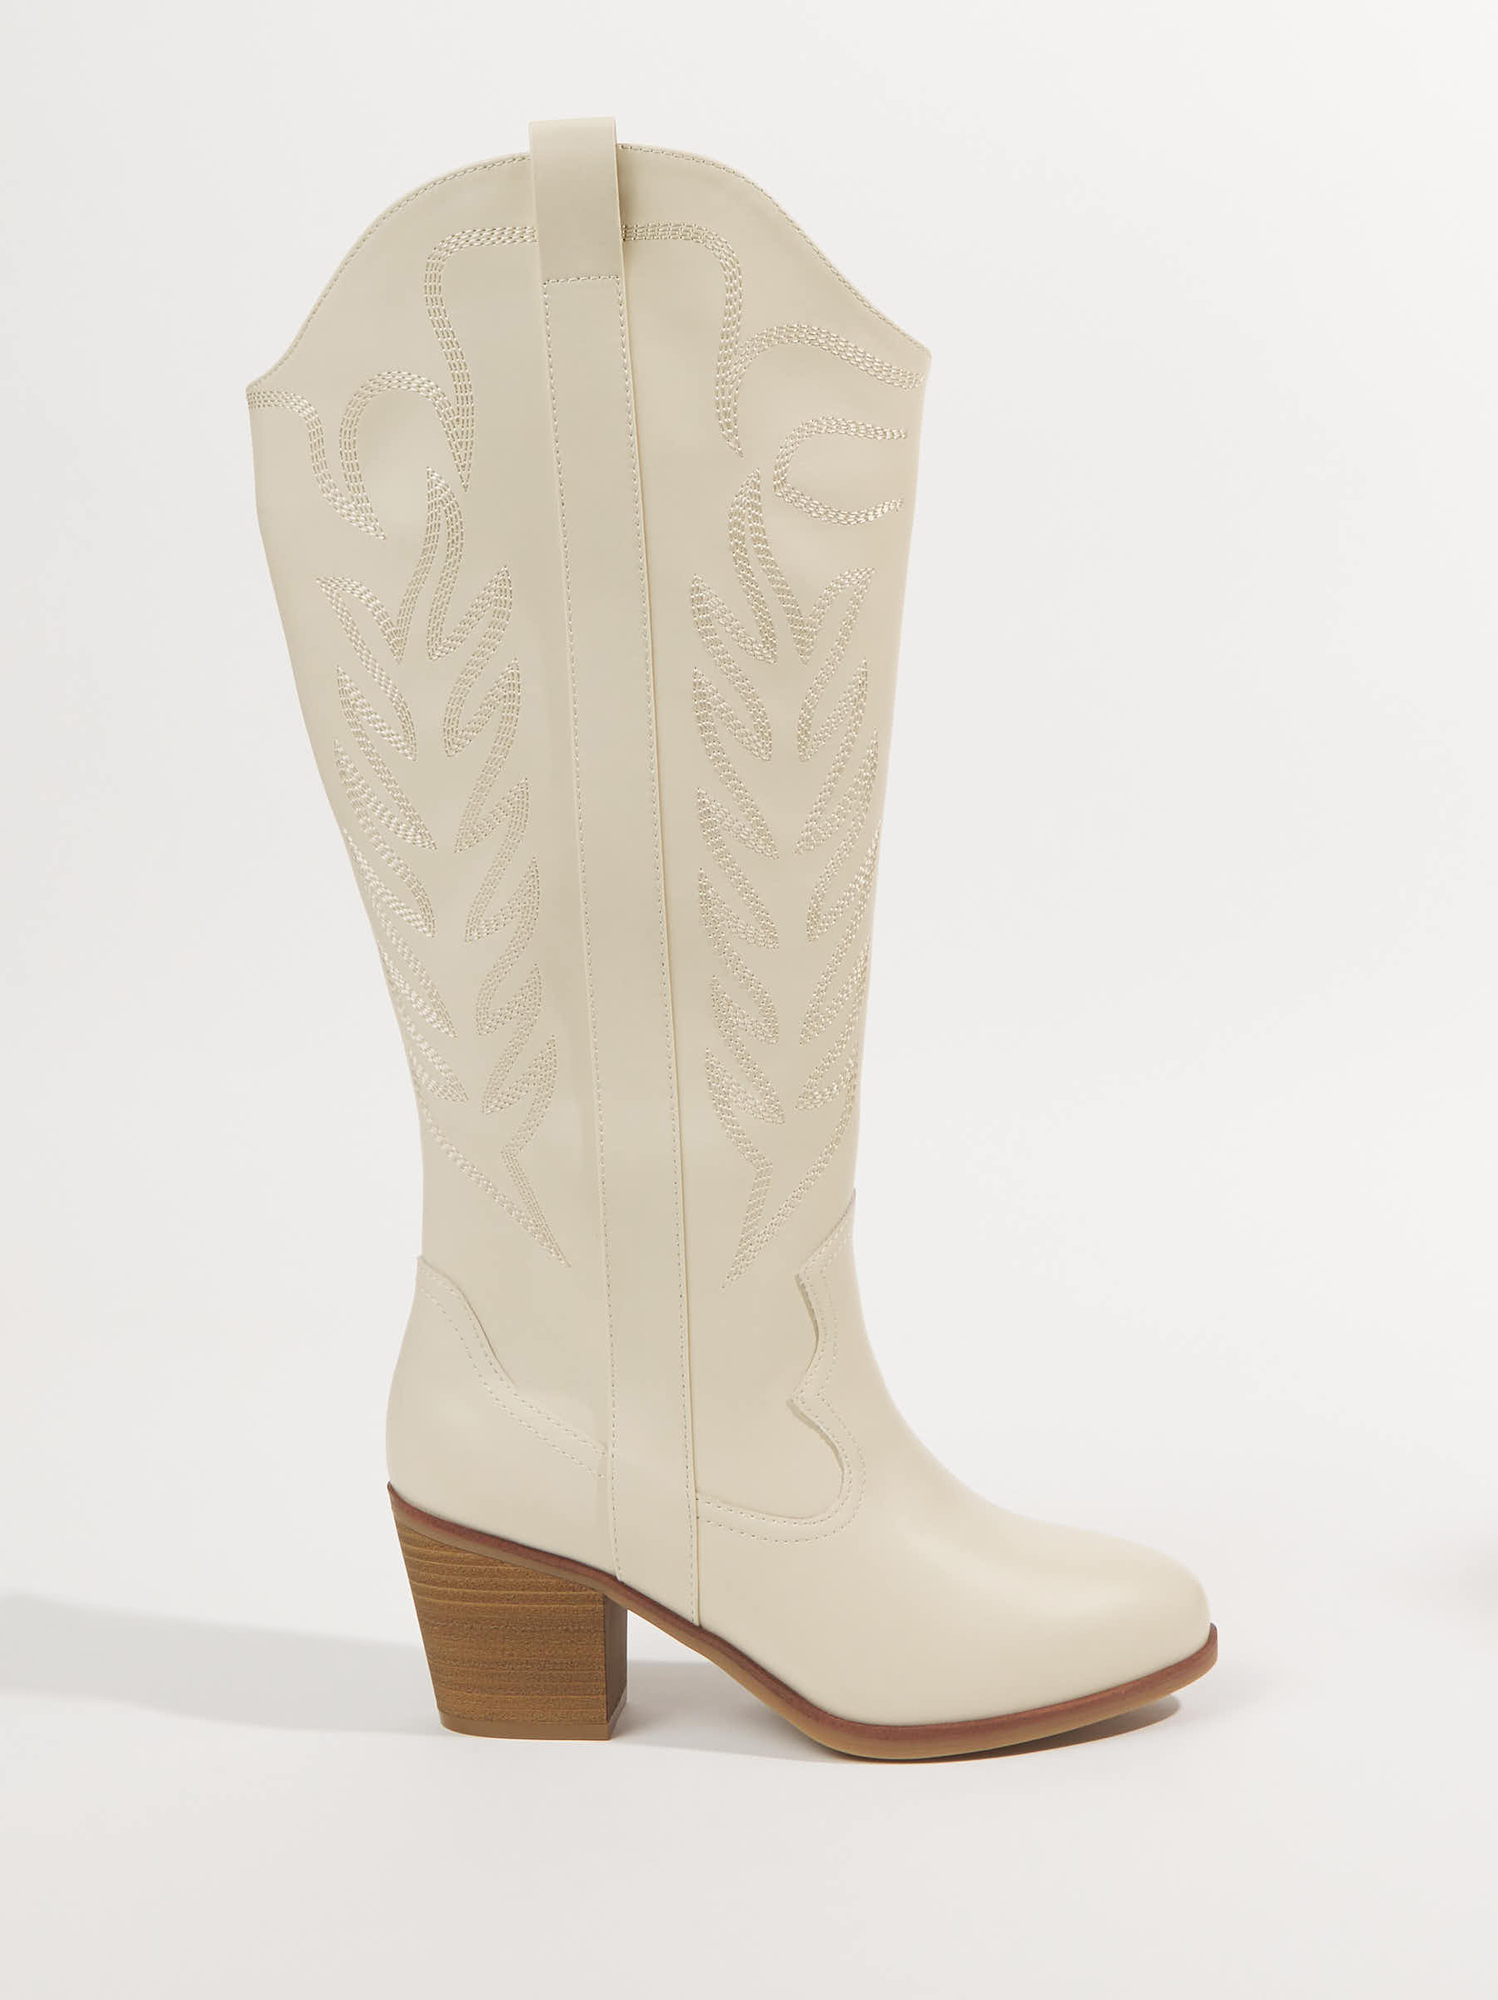 Sierra Wide Width & Wide Calf Western Boots in Ivory | Arula